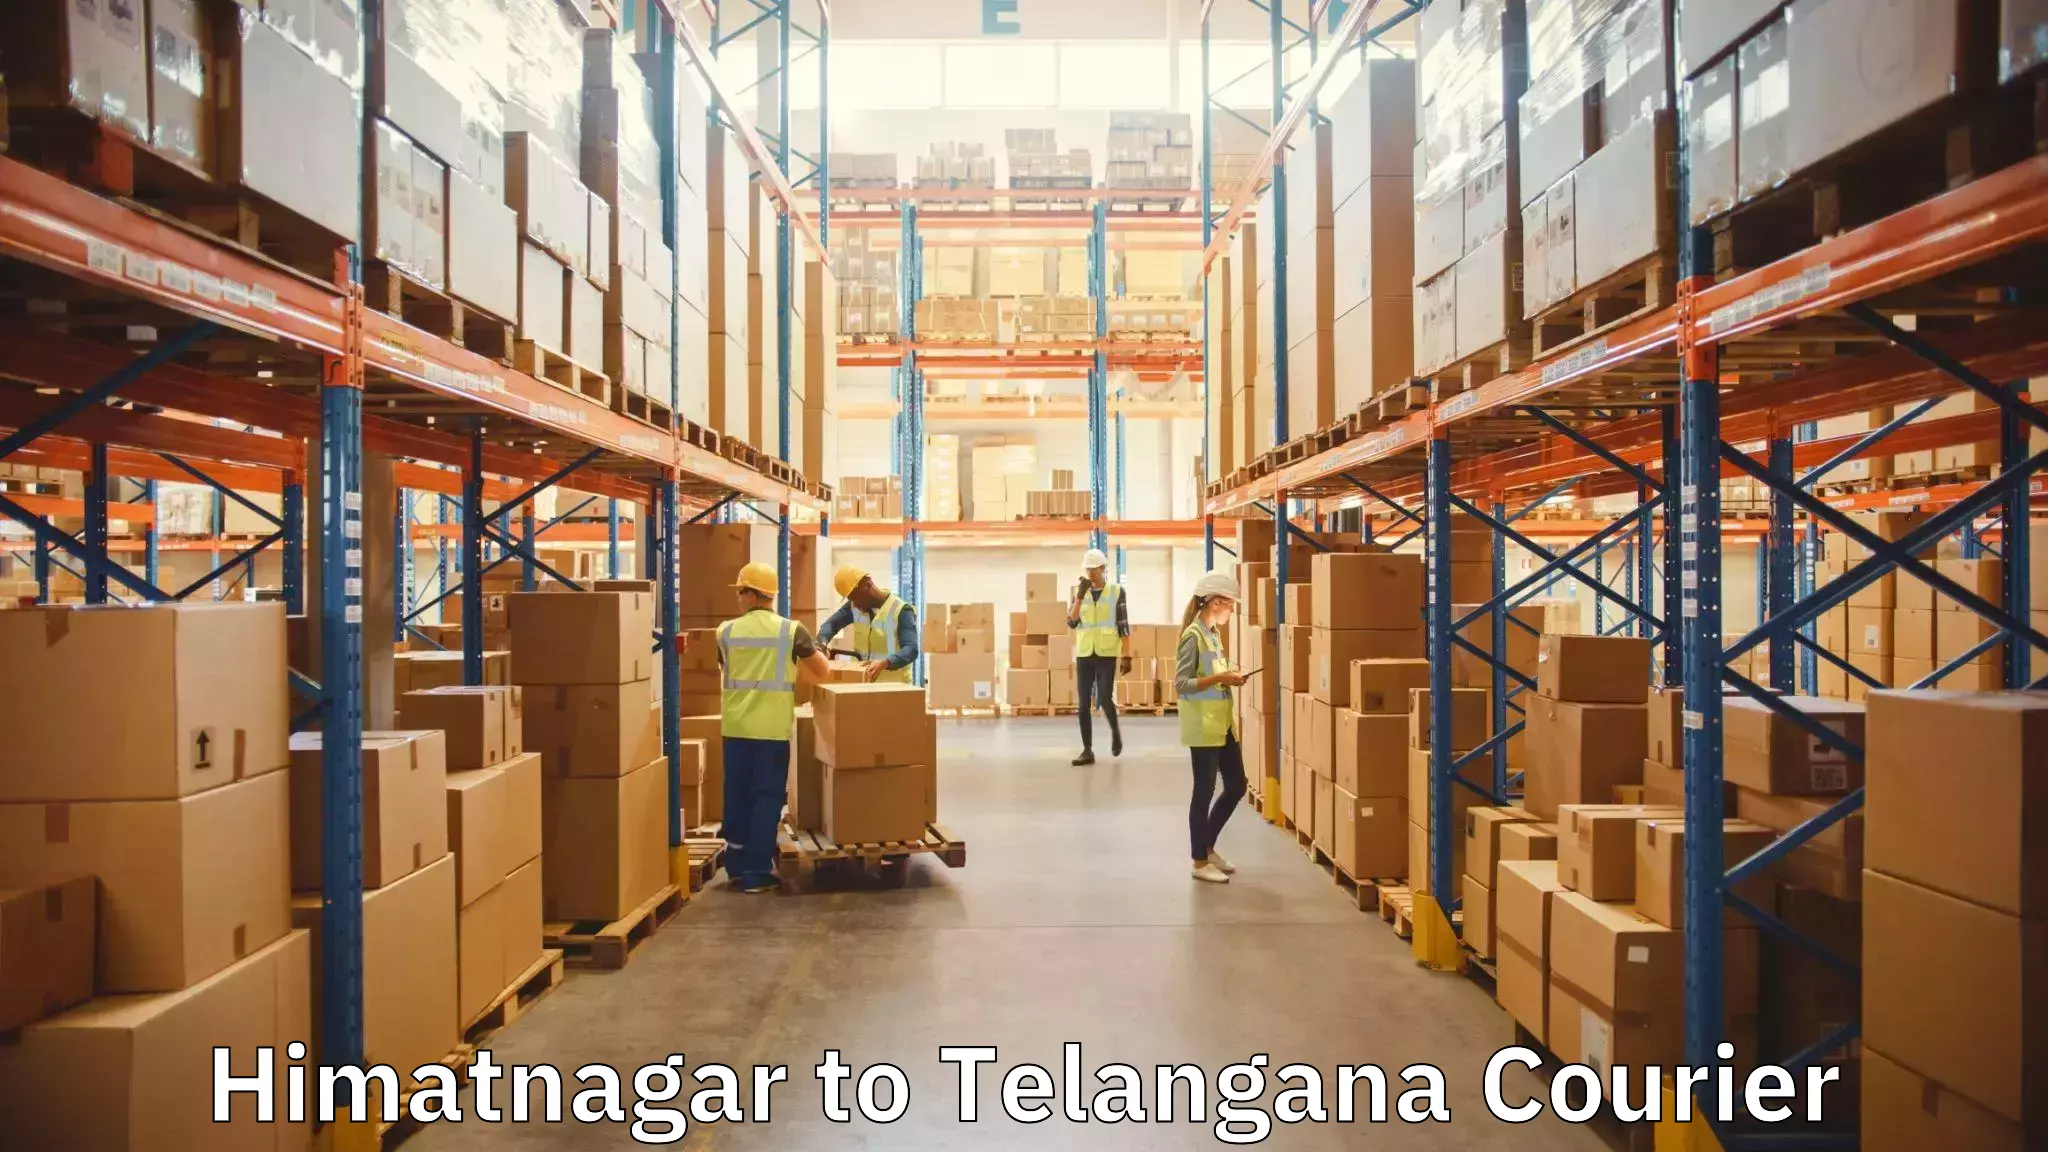 Furniture delivery service Himatnagar to Armoor